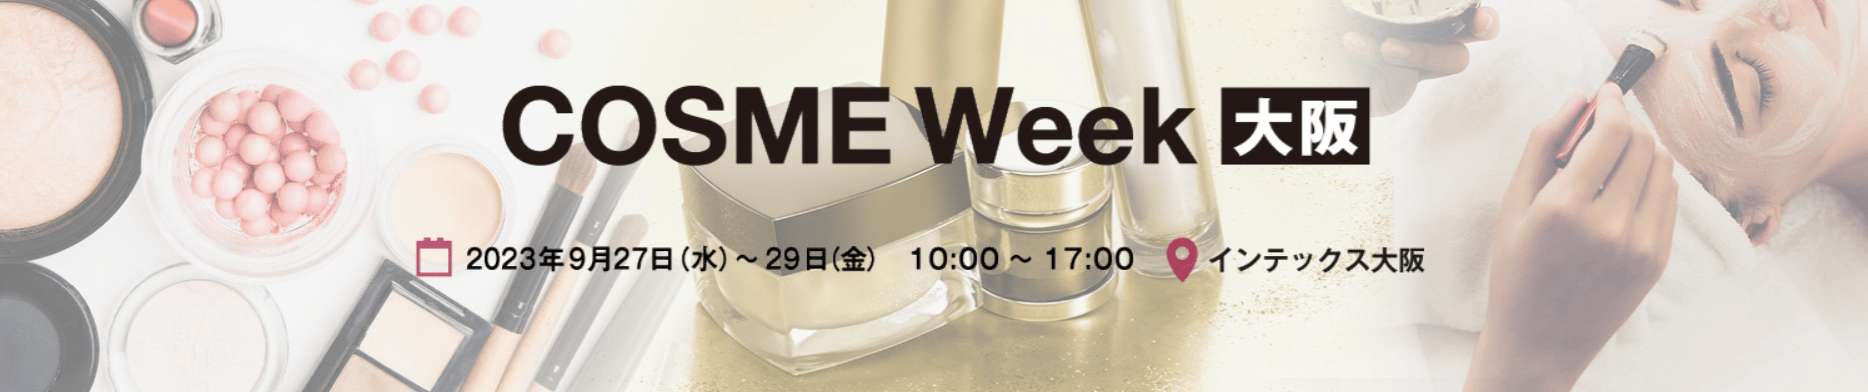 Cosme week Tokyo and Osaka